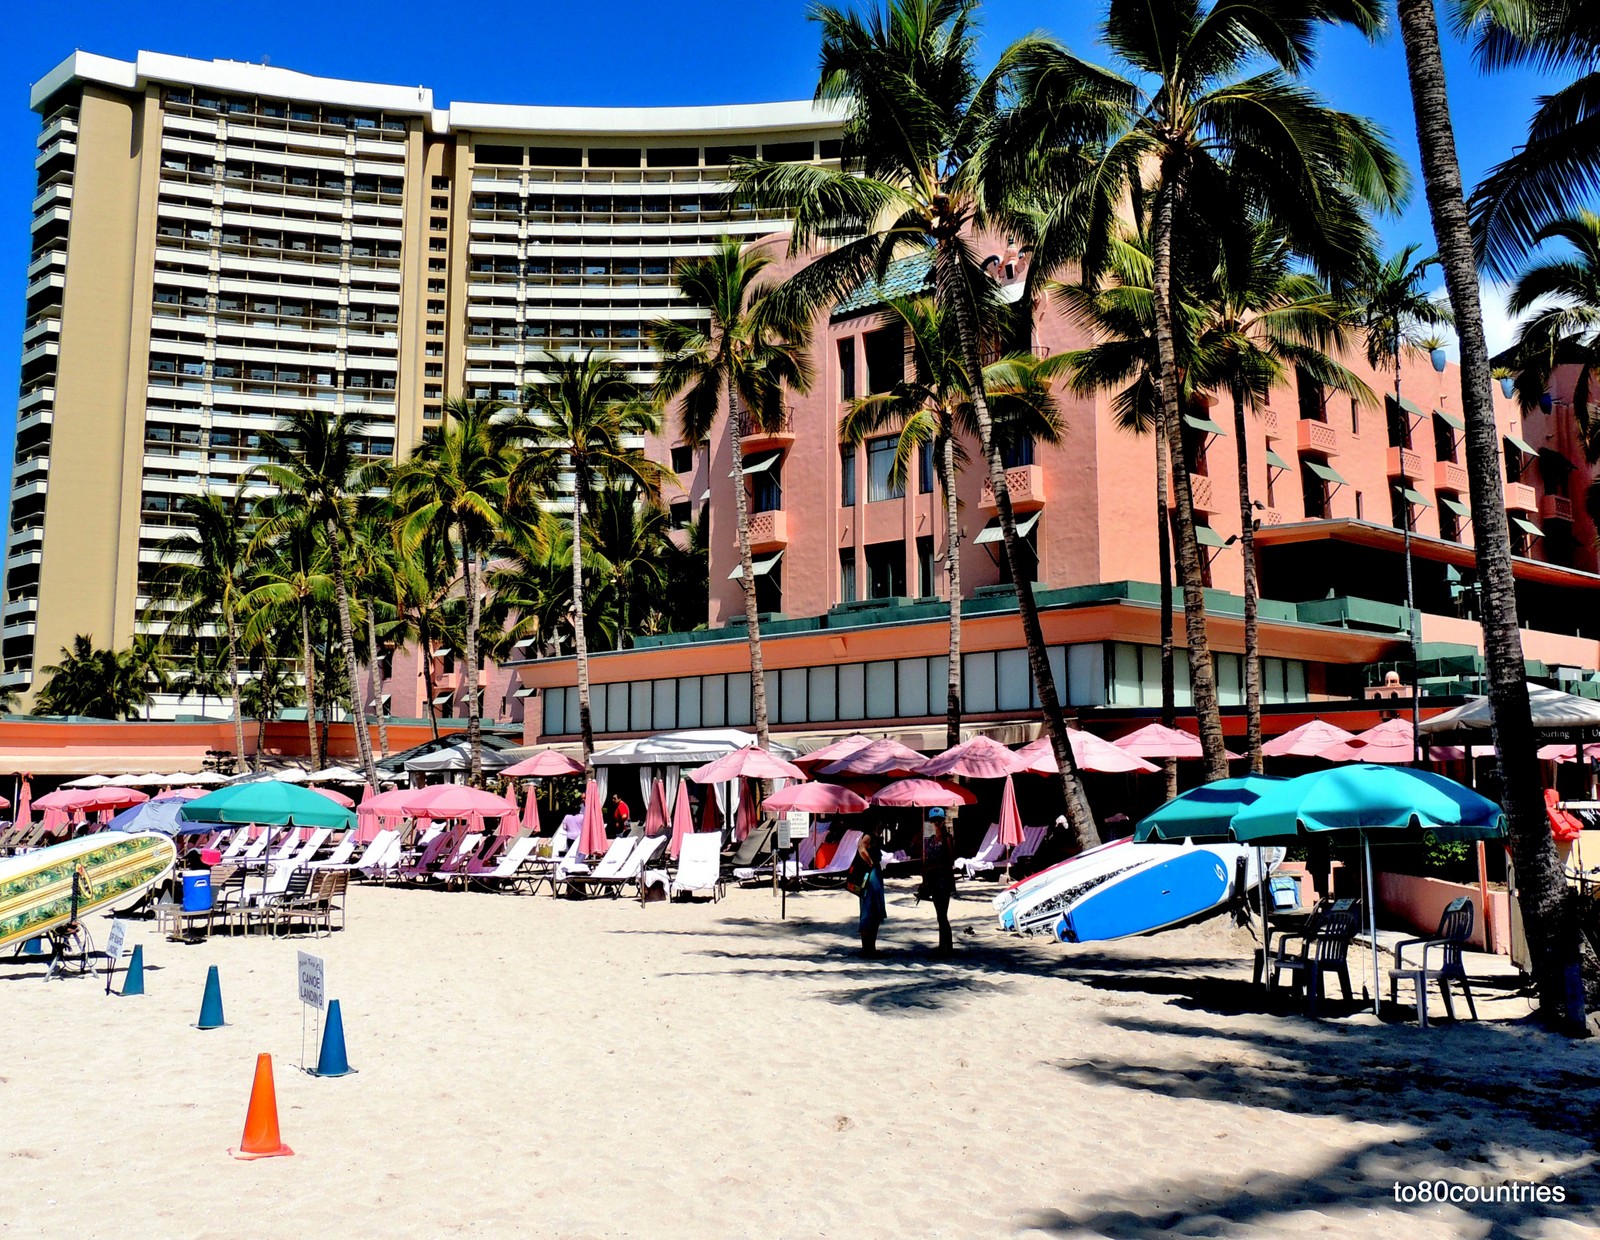 Royal Hawaiian Hotel - Waikiki